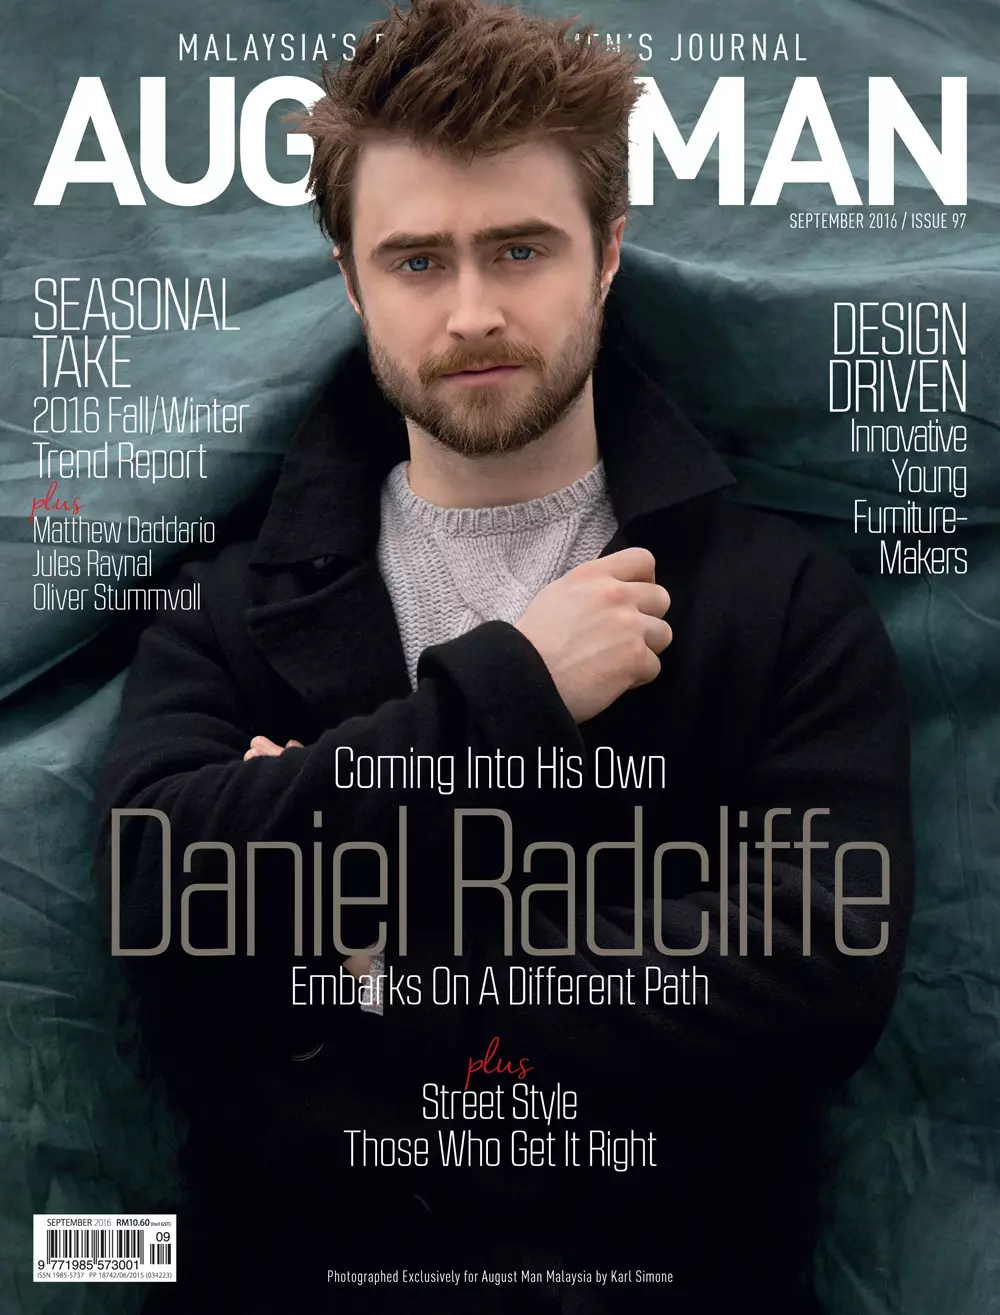 Siapa yang tidak menyangka, Aktor +Daniel Radcliffe membintangi Edisi September 2016 Agustus Pria Malaysia yang baru difoto oleh Karl Simone dan ditata oleh Jenesee Utley, tidak ada Daniel yang datang ke dirinya sendiri untuk memulai jalan yang berbeda.